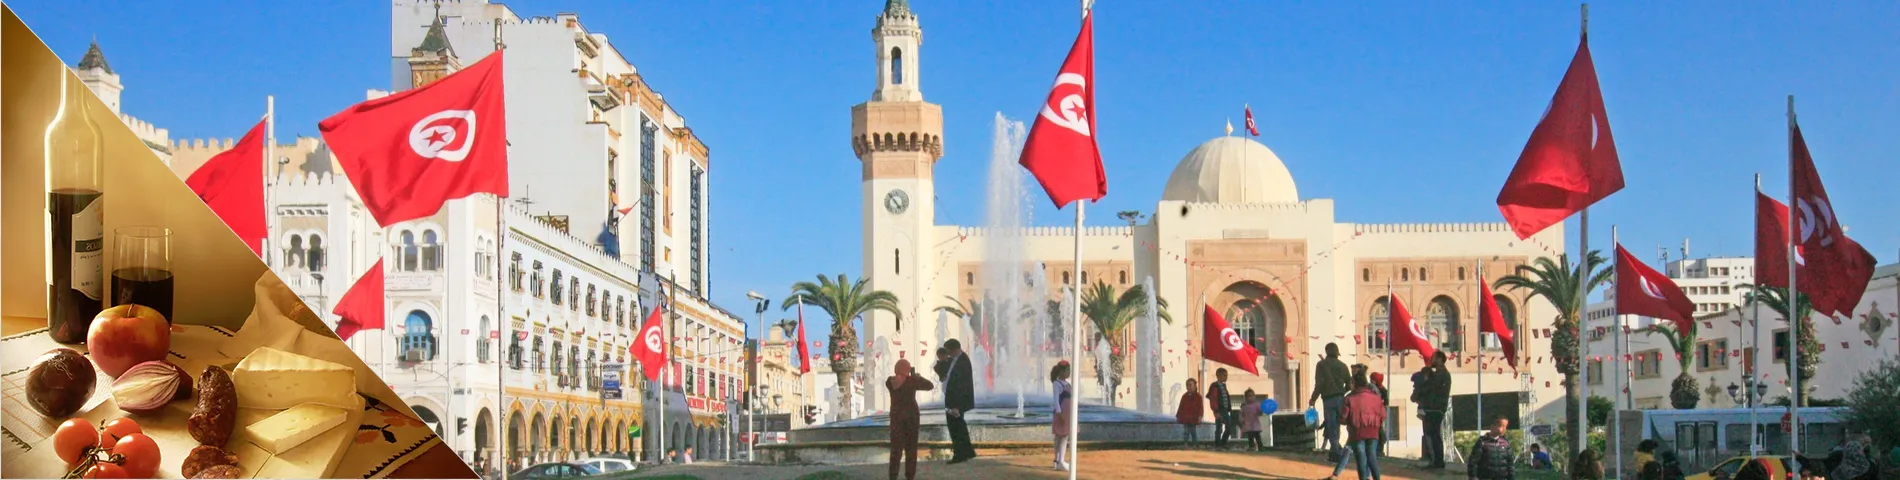 Sfax - Árabe + Cultura